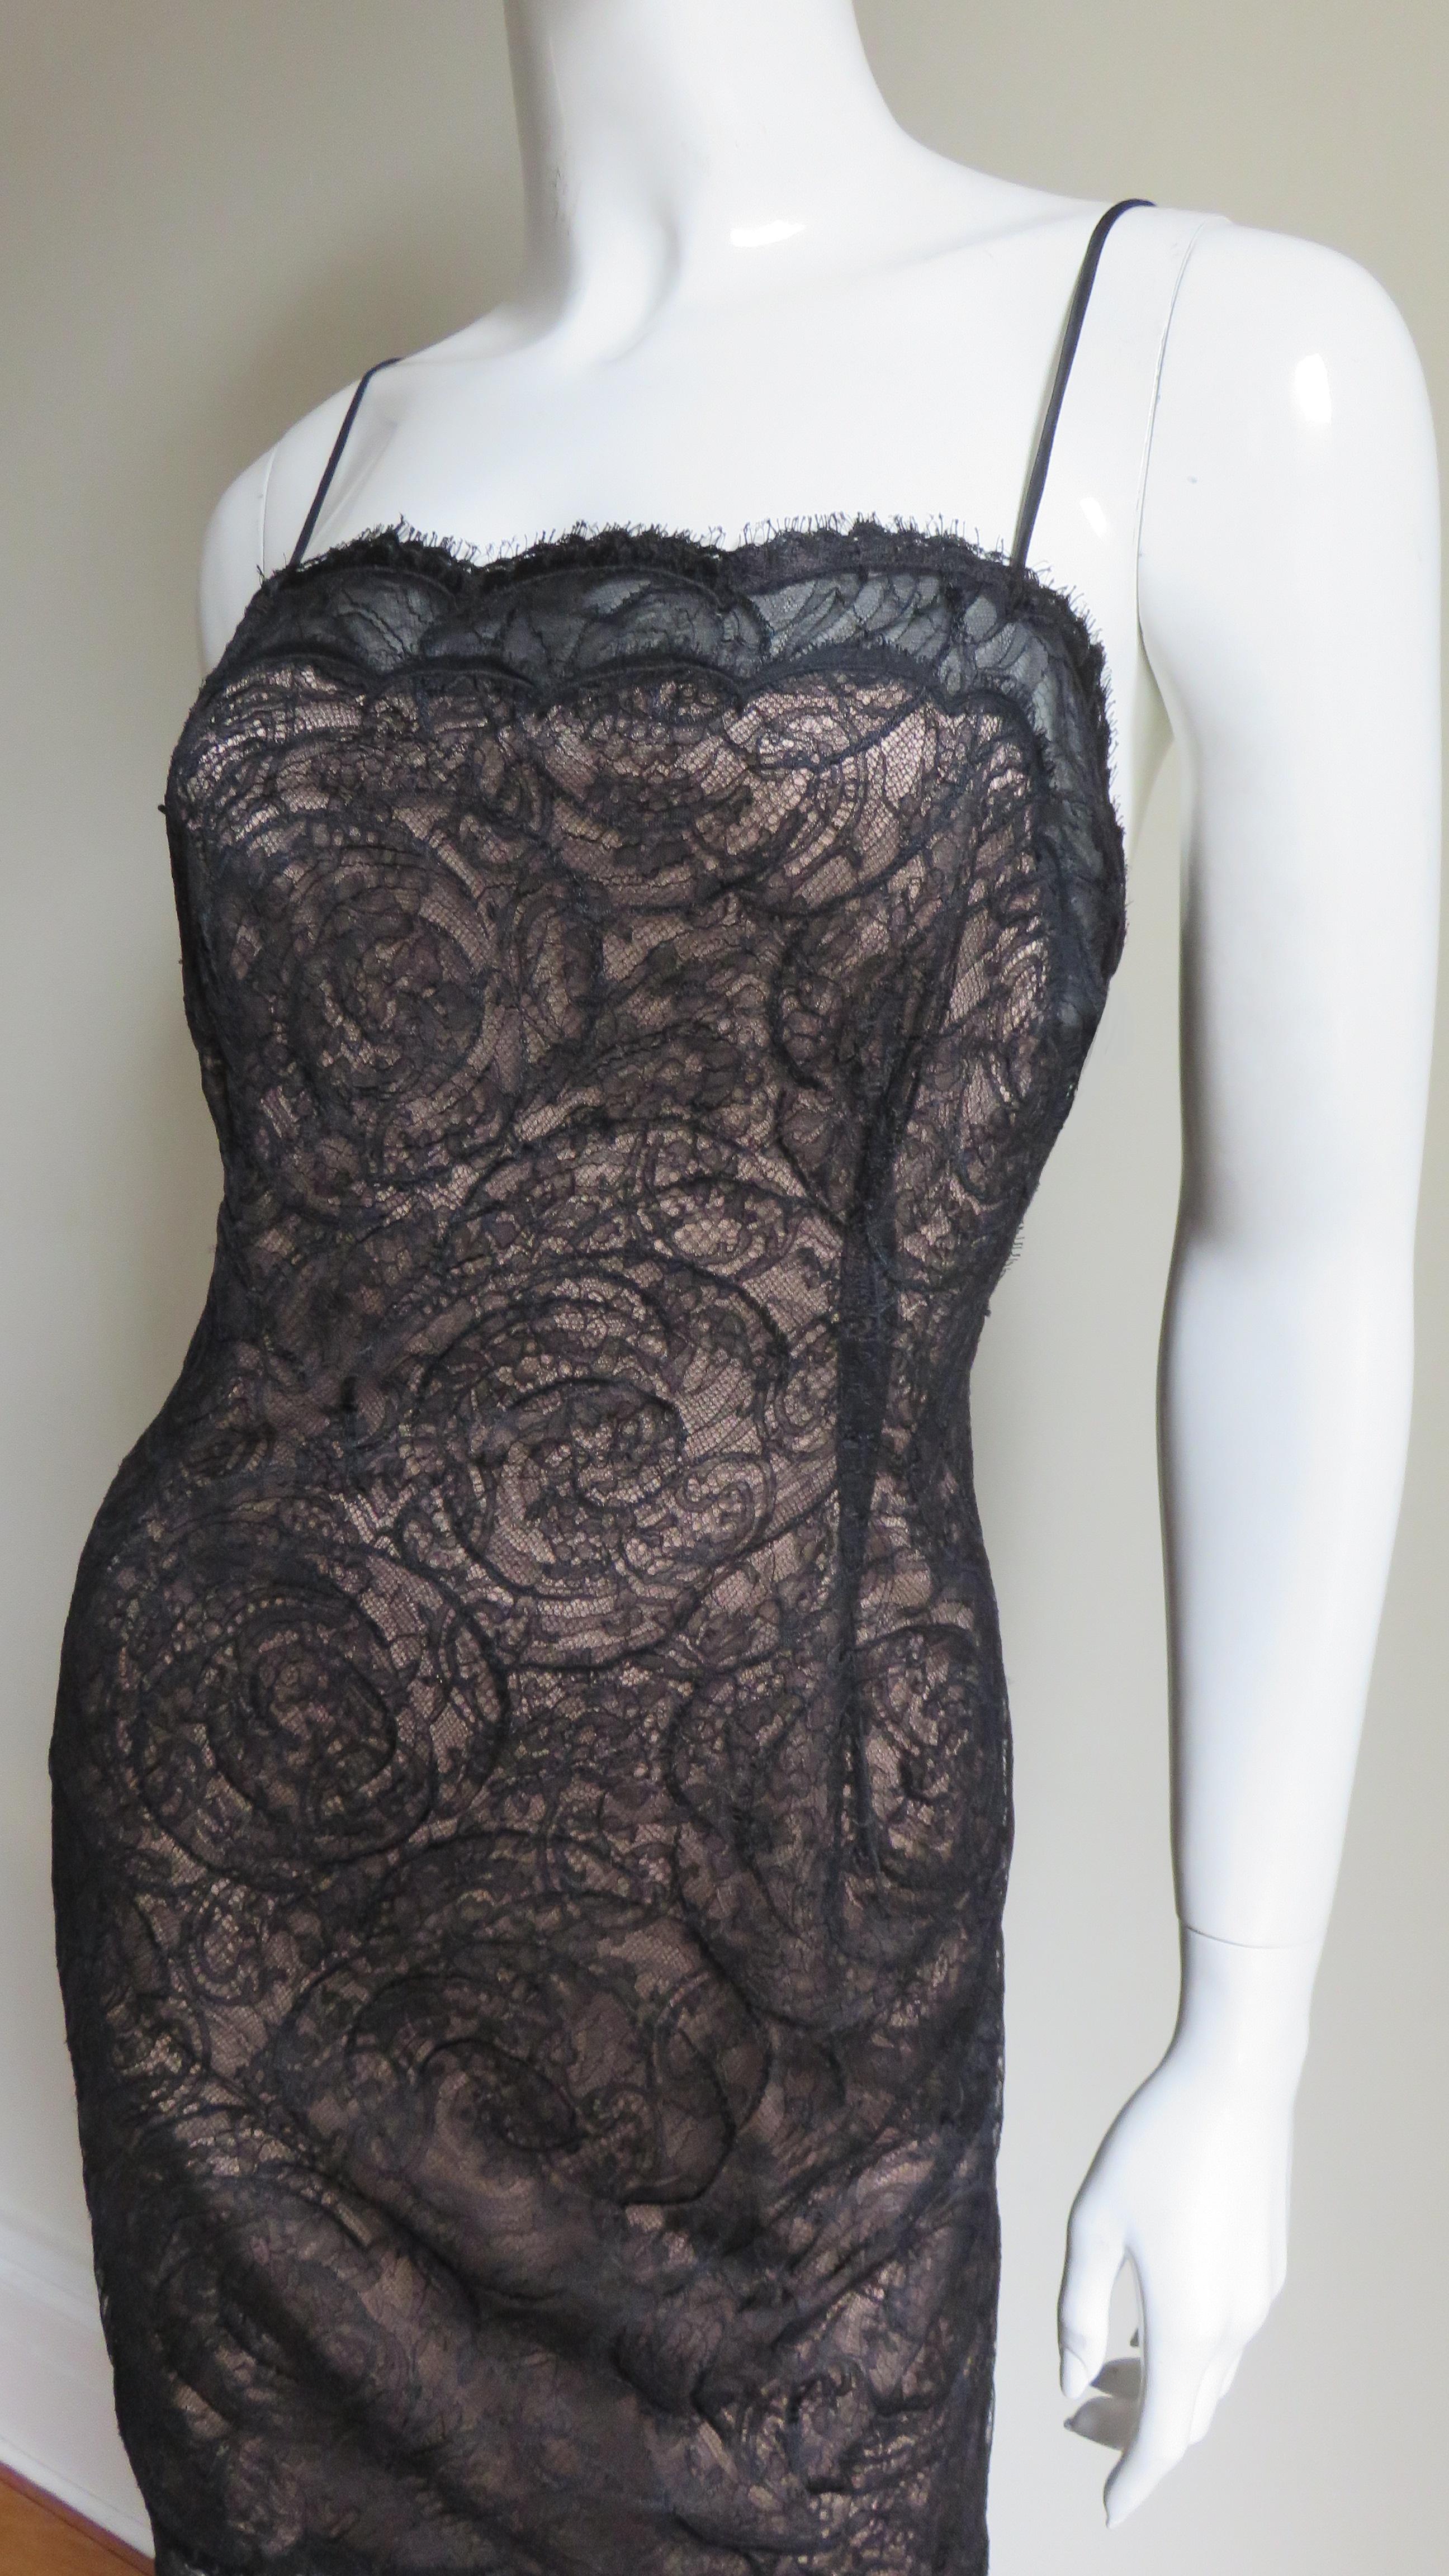 Une fabuleuse robe noire en dentelle de Geoffrey Beene.   Elle a des bretelles spaghetti et de la dentelle festonnée sur le haut de la robe et l'ourlet.  La dentelle est complexe, avec un motif circulaire élaboré.  La robe est entièrement doublée en